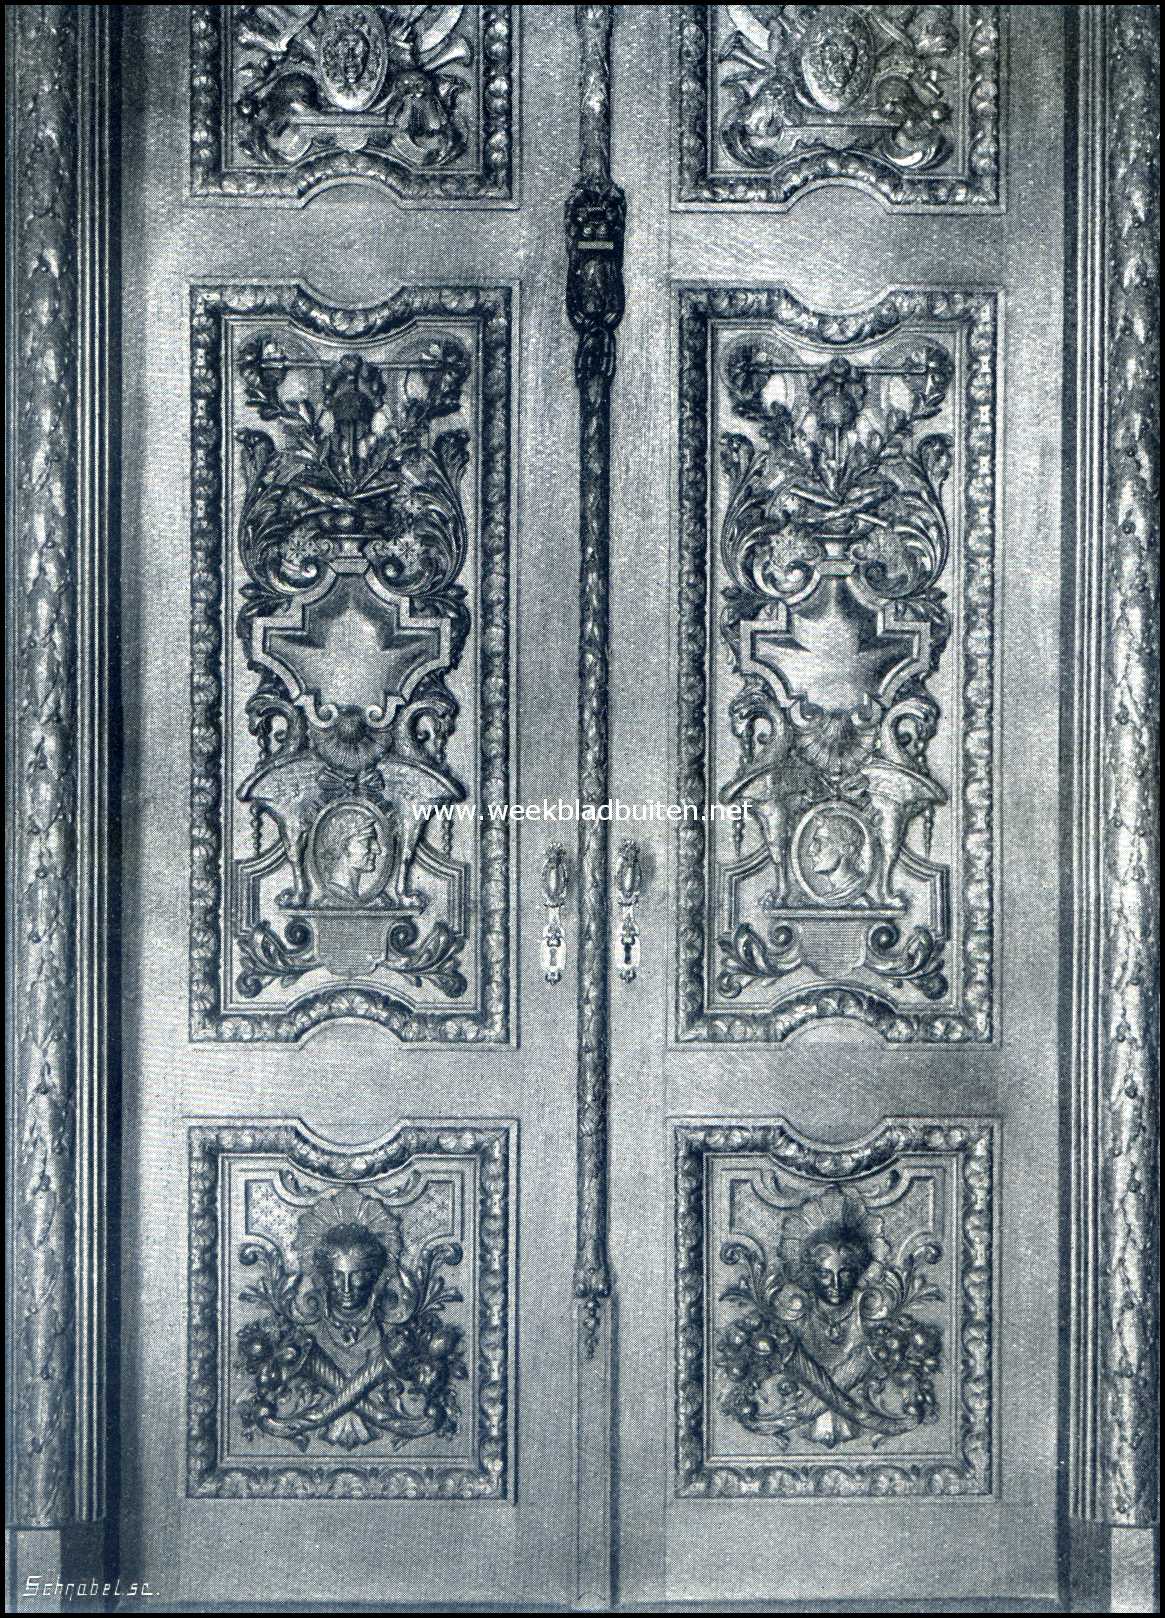 Het Kasteel Rechteren. Detail van een deur in de Ridderzaal van het Kasteel Rechteren